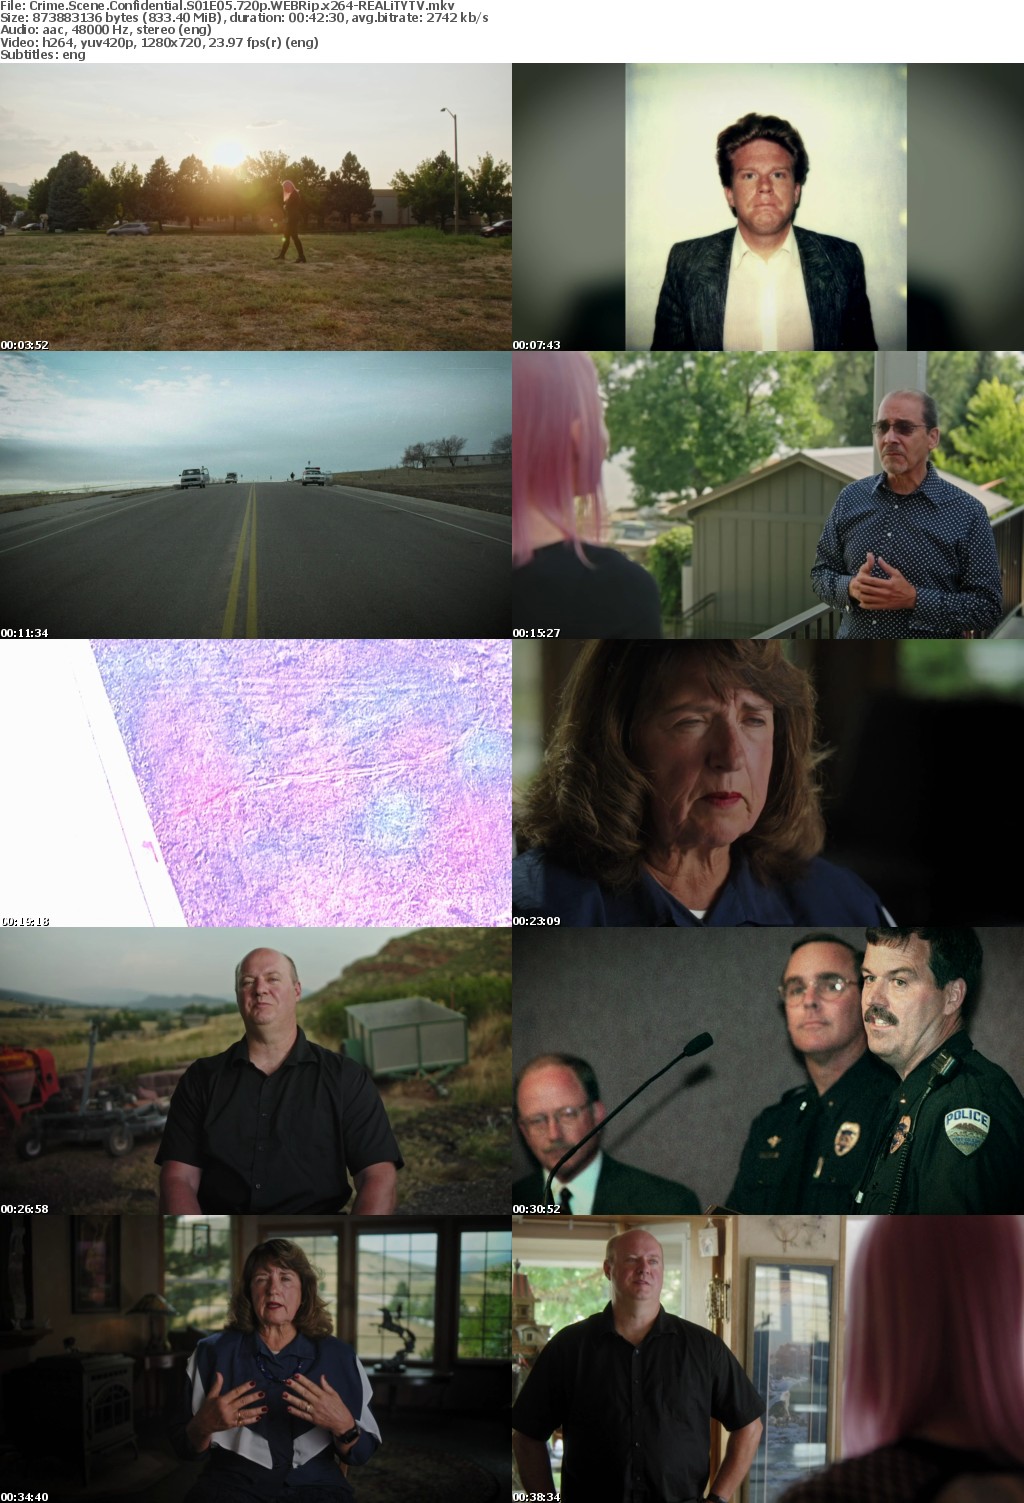 Crime Scene Confidential S01E05 720p WEBRip x264-REALiTYTV